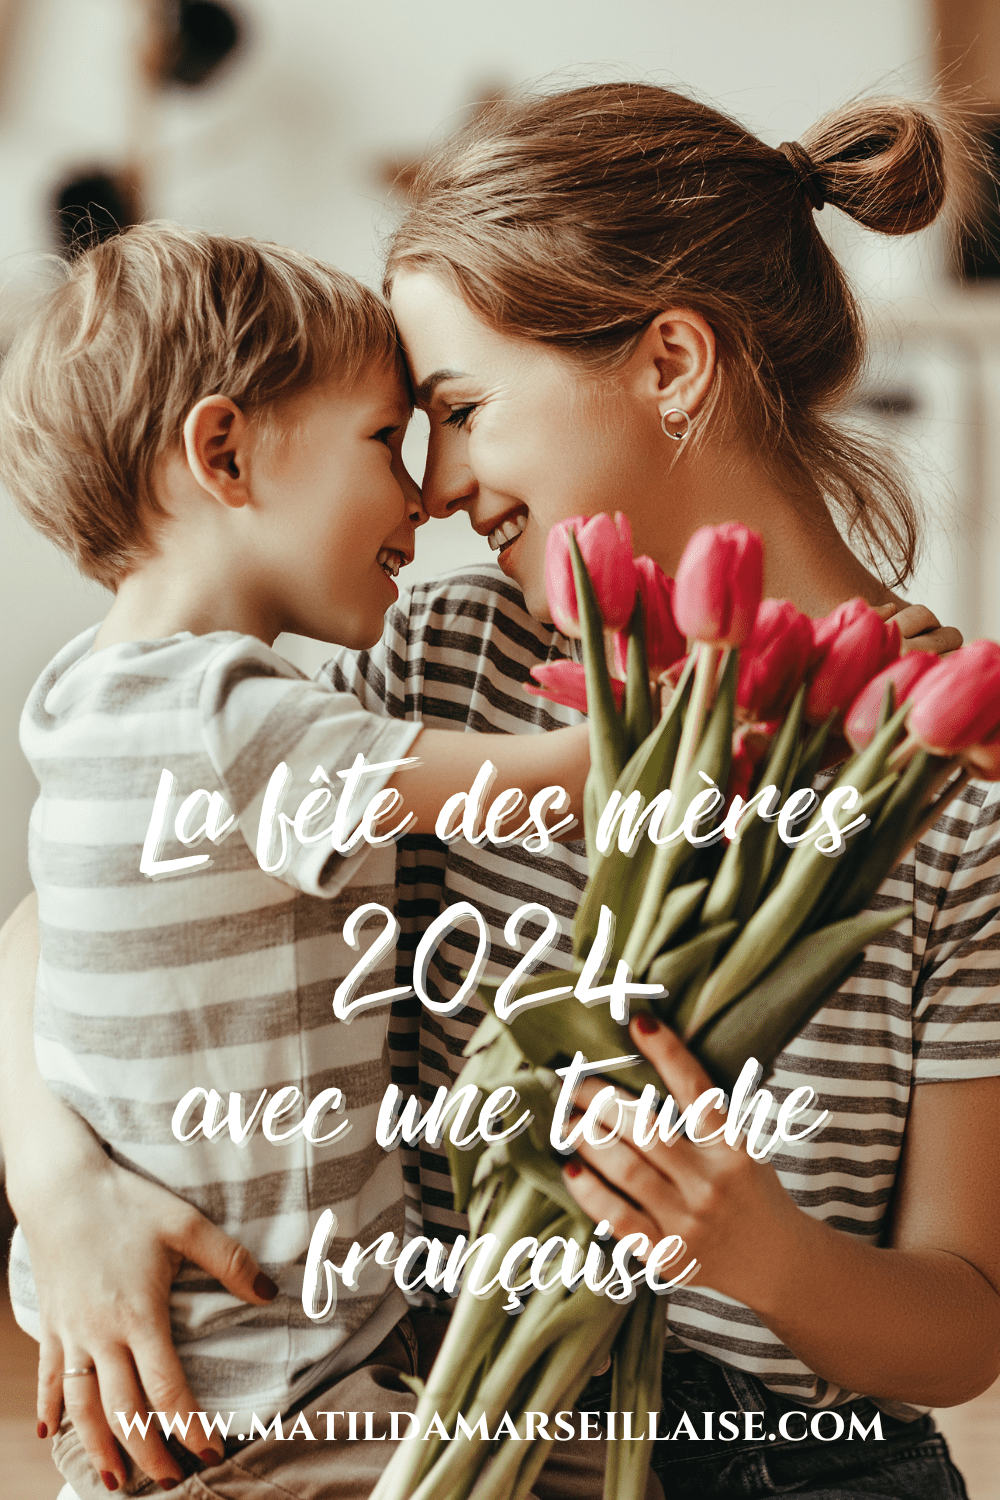 Où et comment célébrer la fête des mères 2024 avec une touche française en Australie